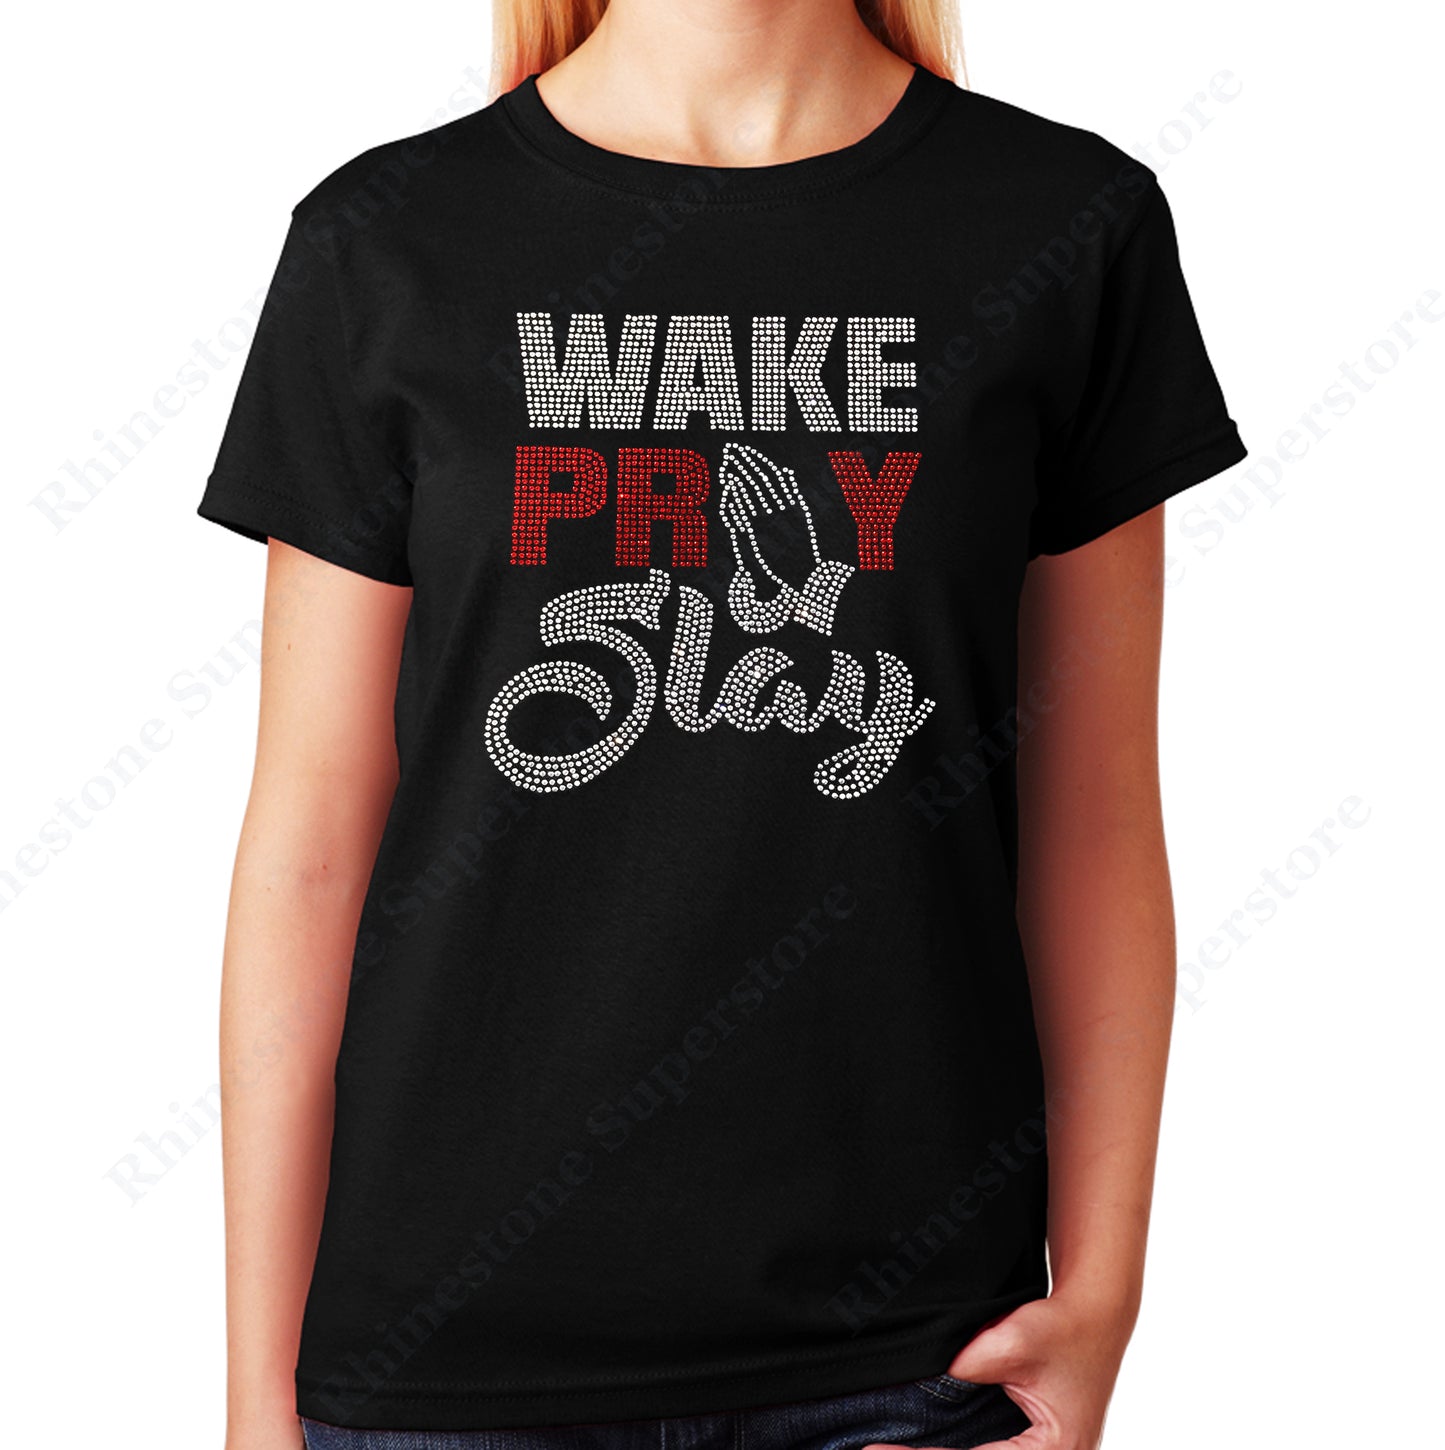 Unisex T-Shirt with Wake Pray Slay in Rhinestones